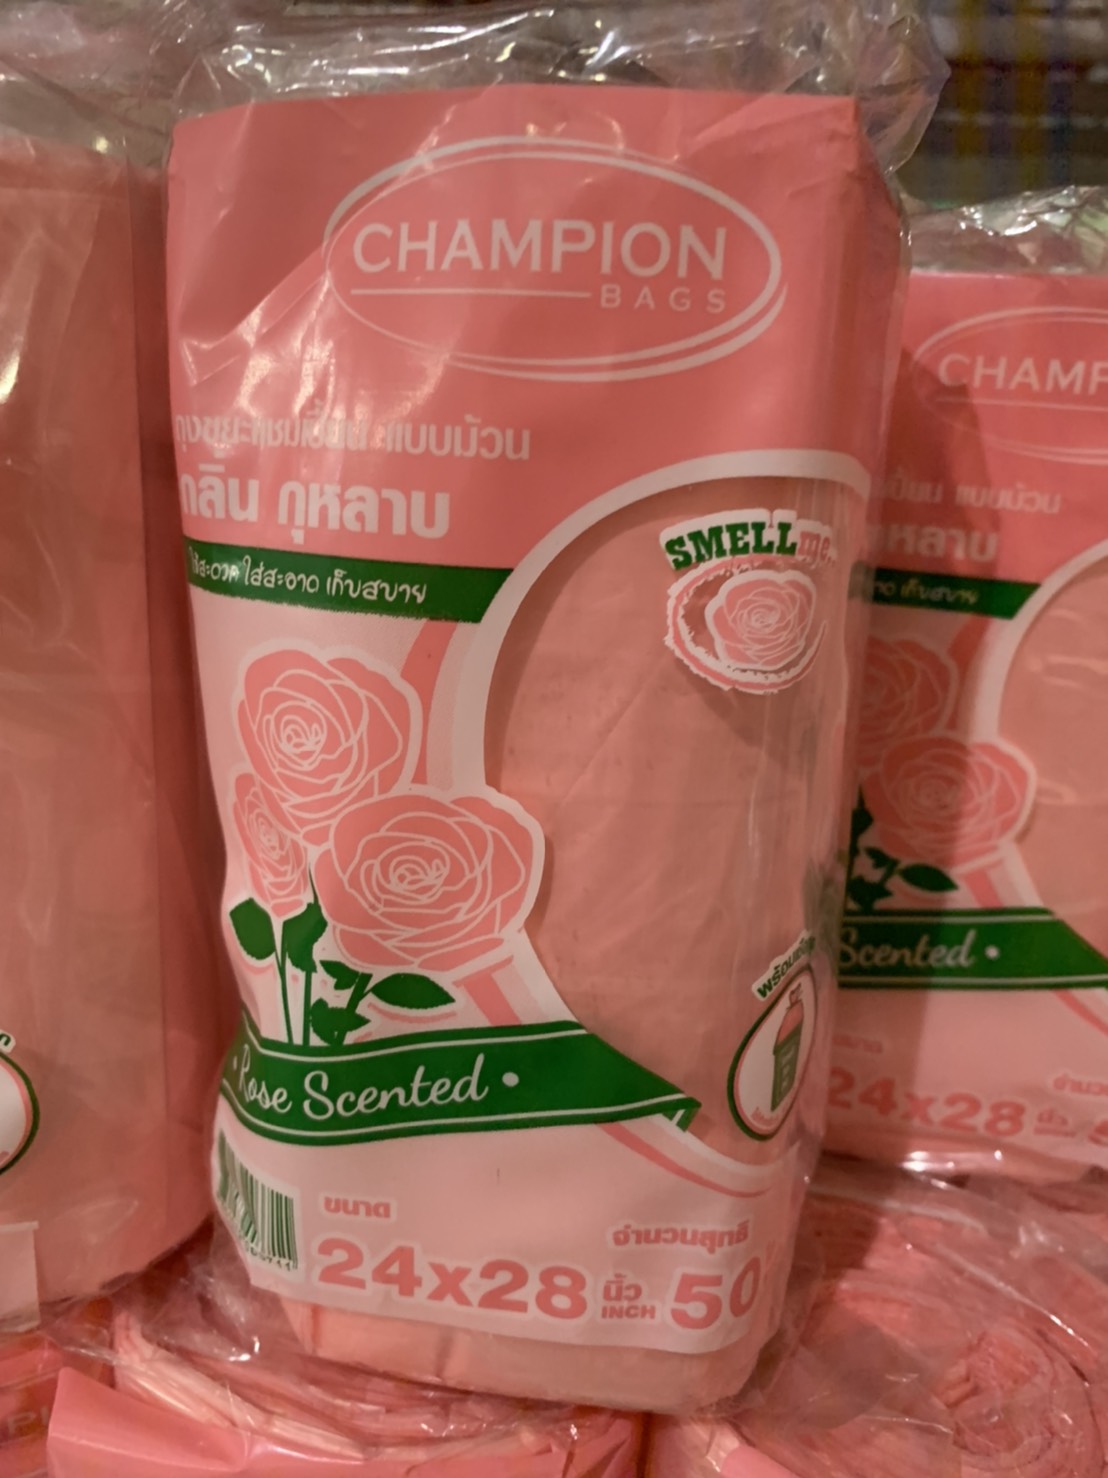 Champion ถุงขยะม้วนกลิ่นดอกไม้ ขนาด 24*28 นิ้ว. จำนวน 50 ใบ พร้อมเชือกผูกปากถุง 